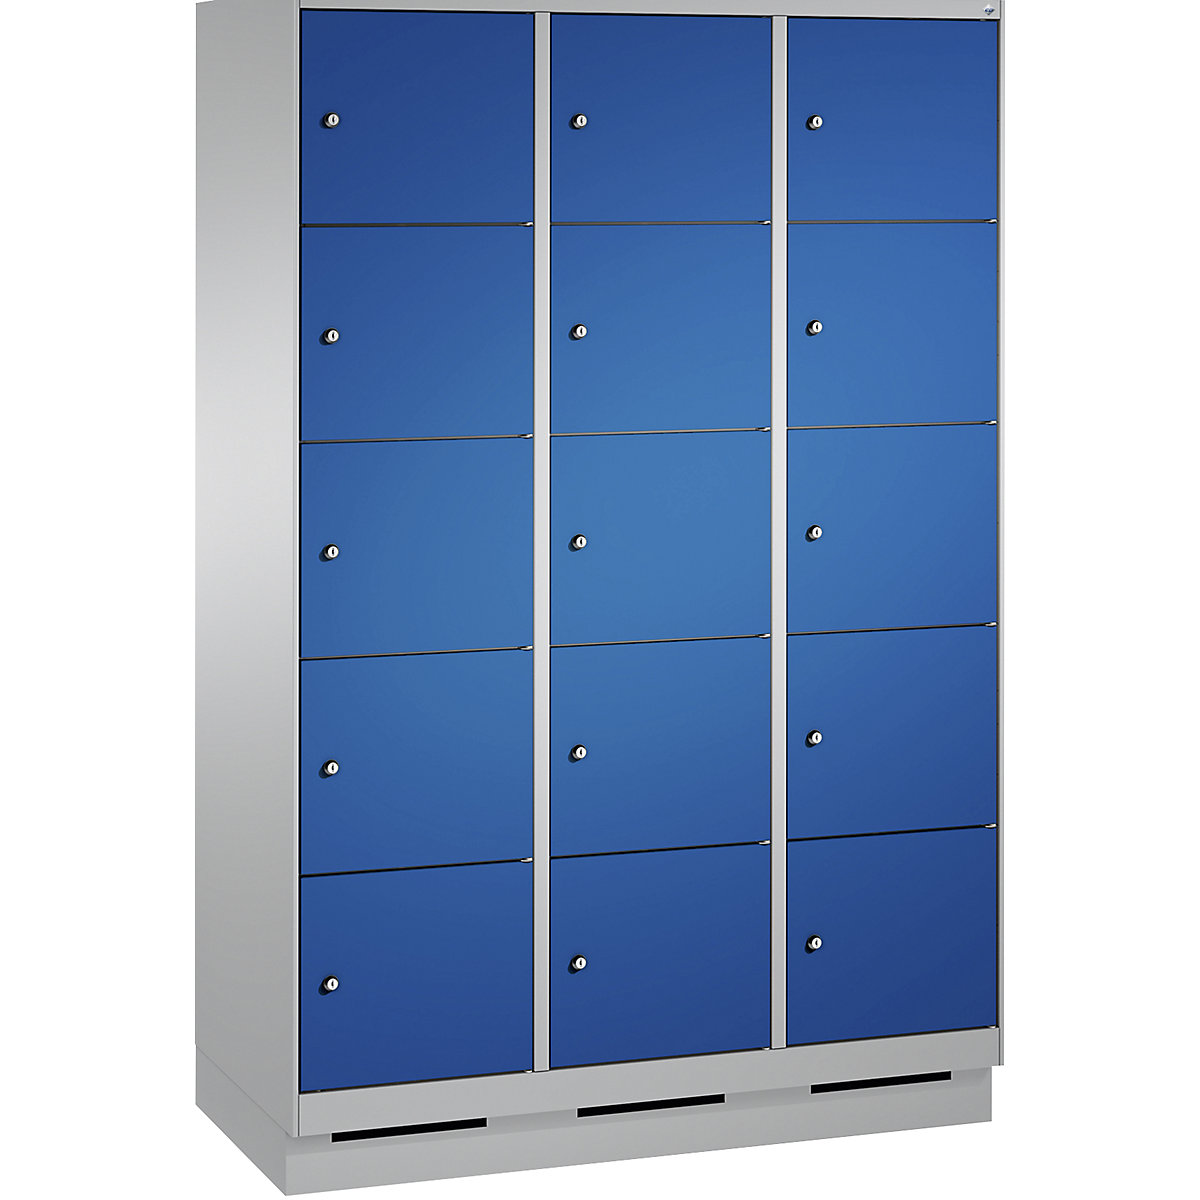 Armoire à casiers sur socle EVOLO – C+P, 3 compartiments, 5 casiers chacun, largeur compartiments 400 mm, aluminium / bleu gentiane-4